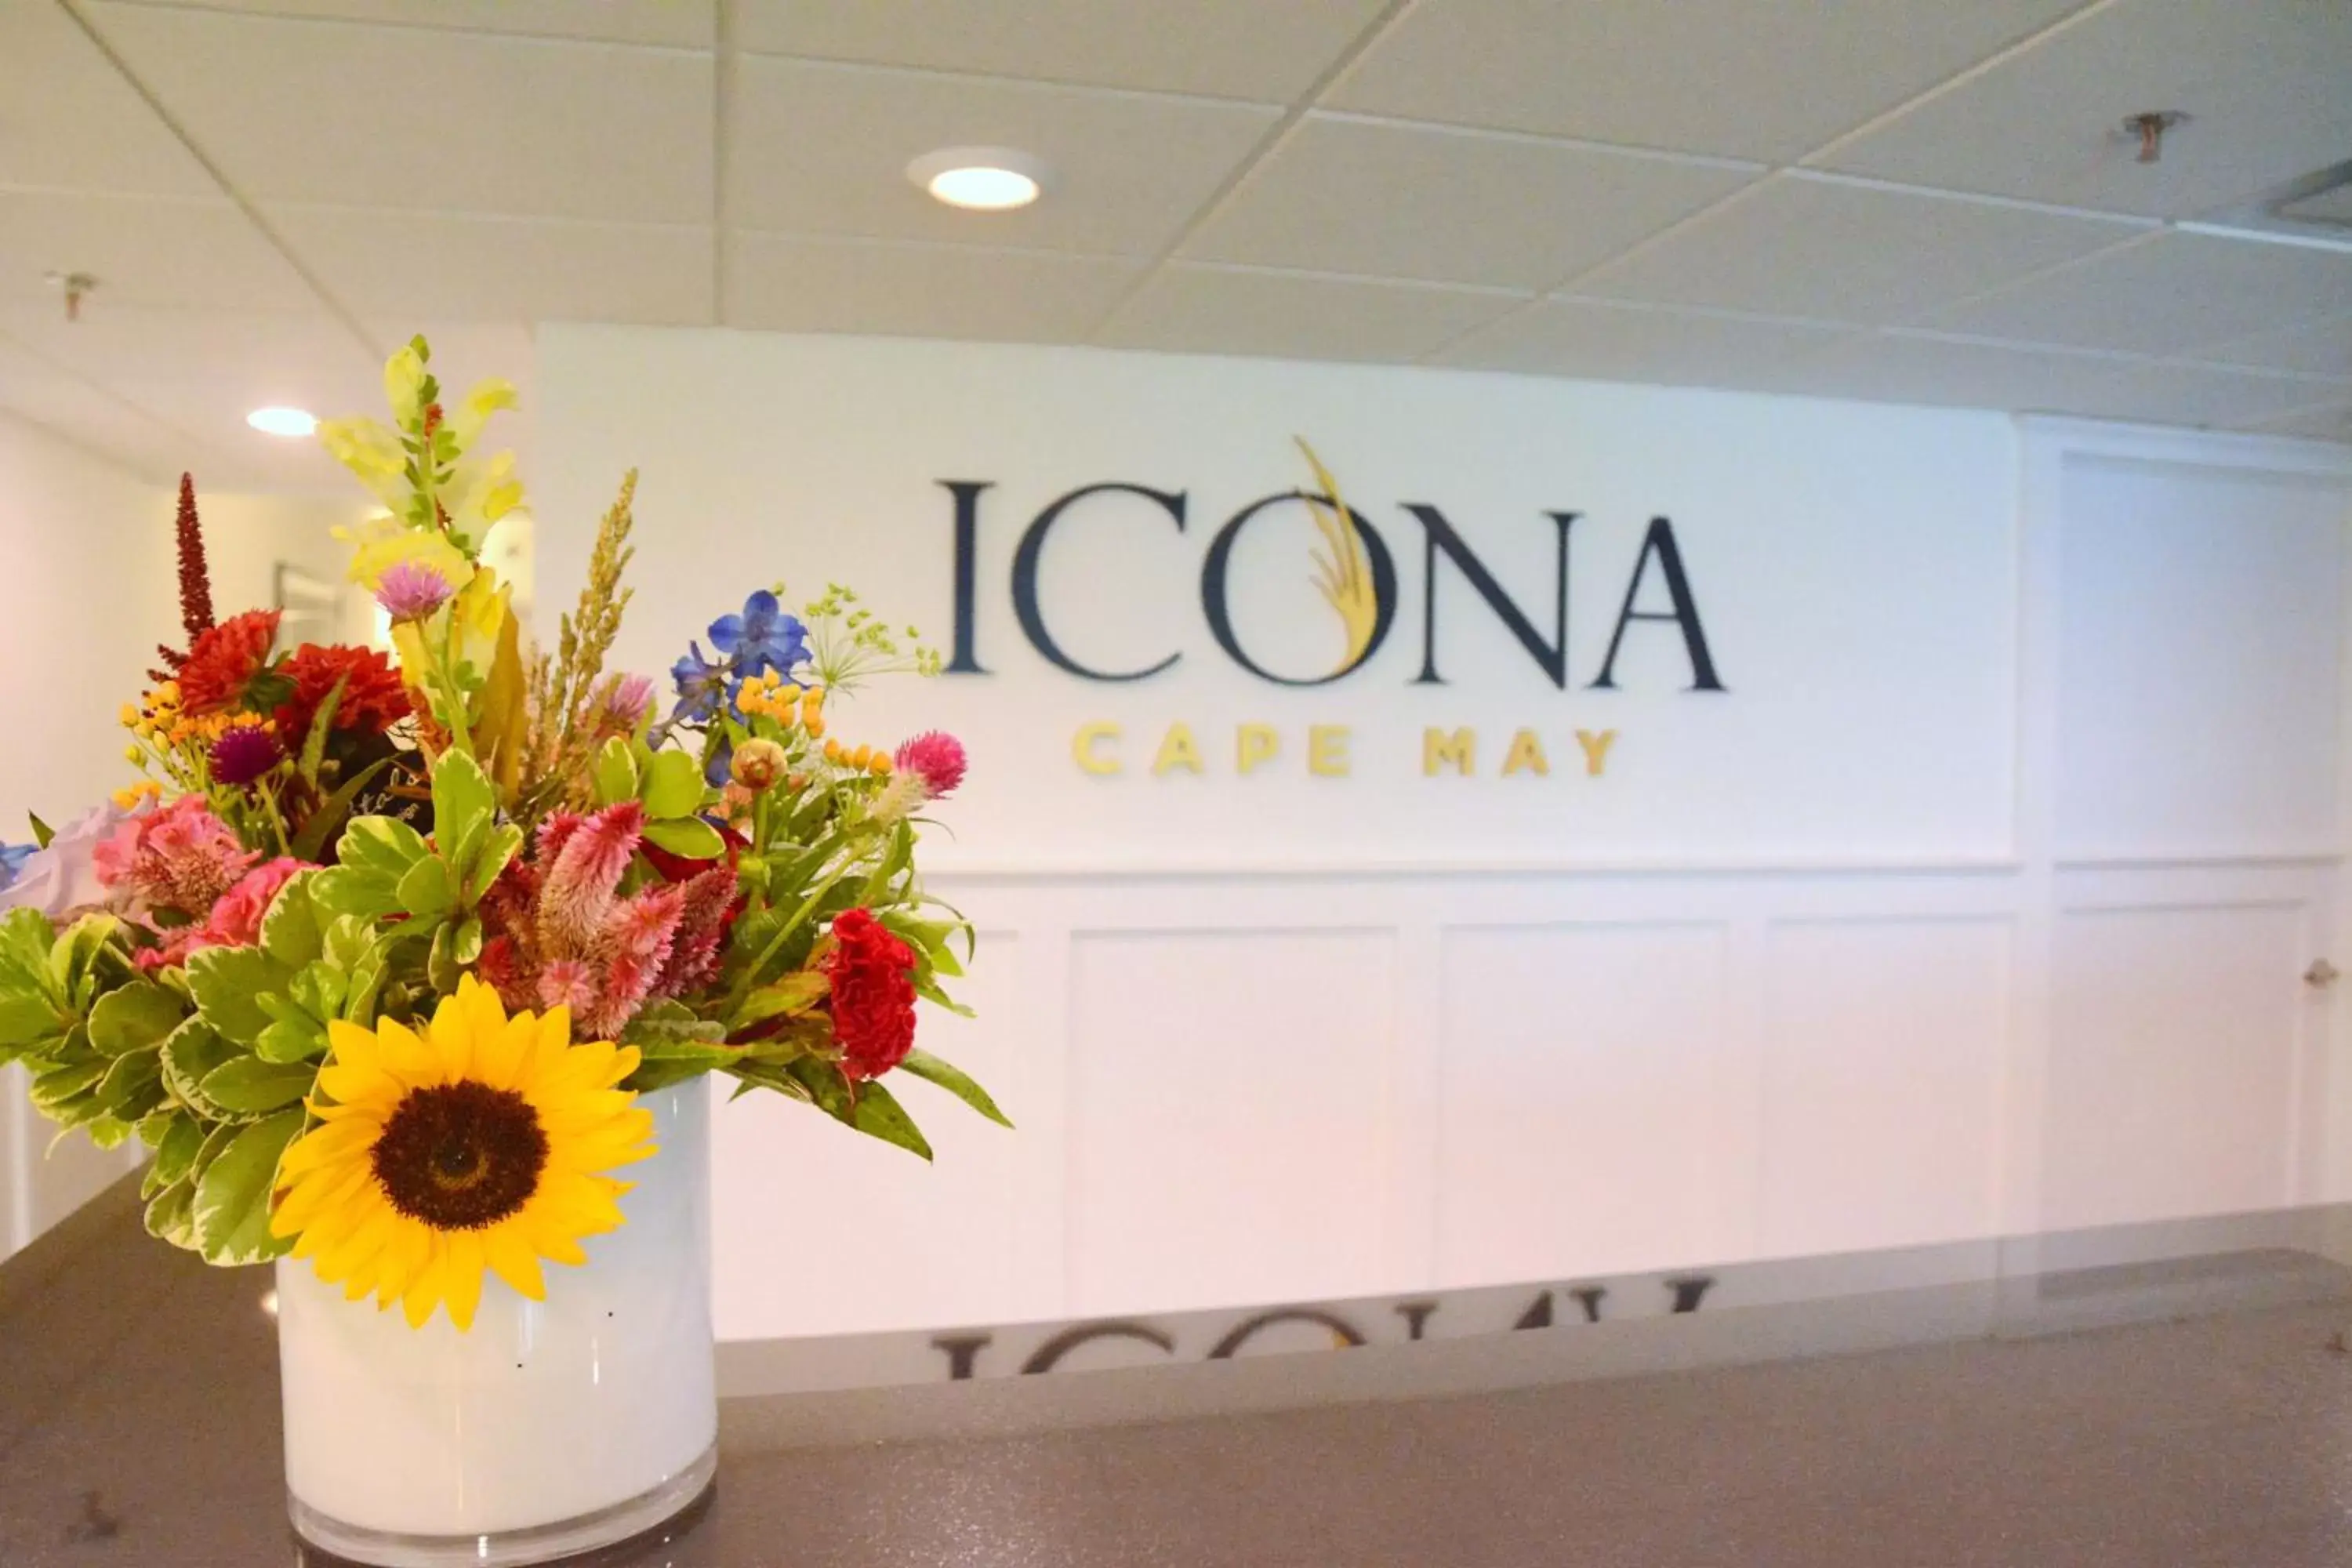 Lobby or reception, Lobby/Reception in ICONA Cape May